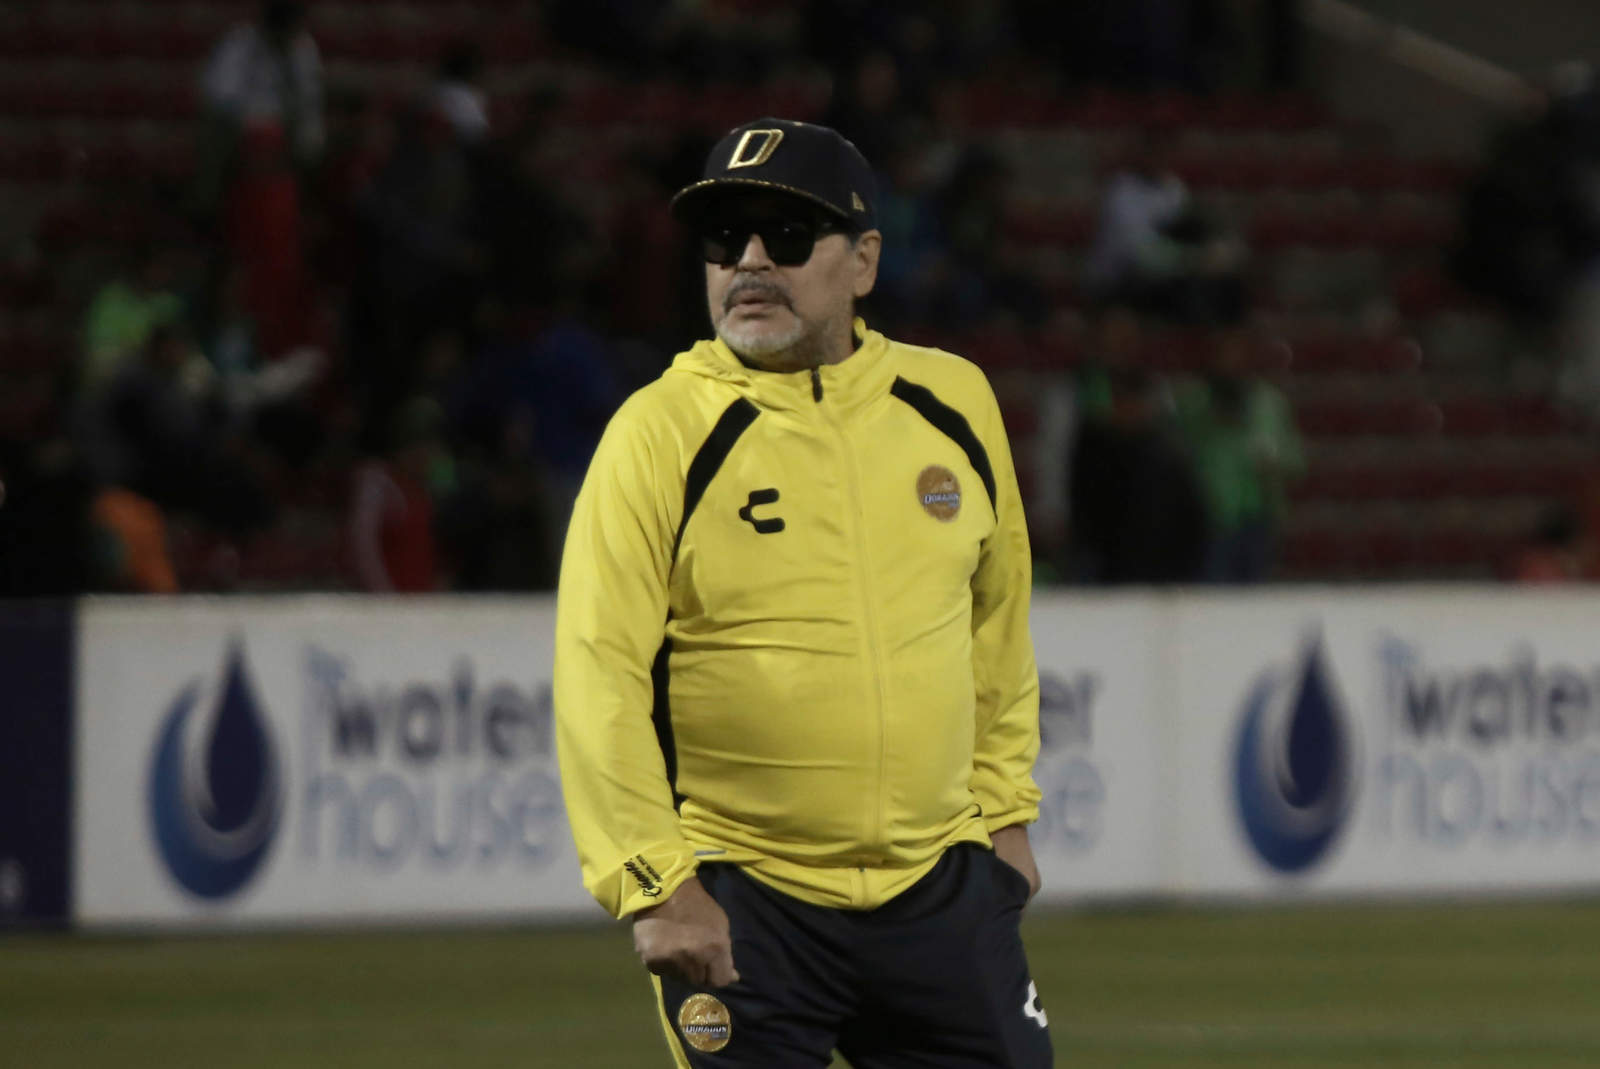 El técnico argentino pidió retirar del campo a un reportero previo al duelo entre Dorados y Atlético San Luis.